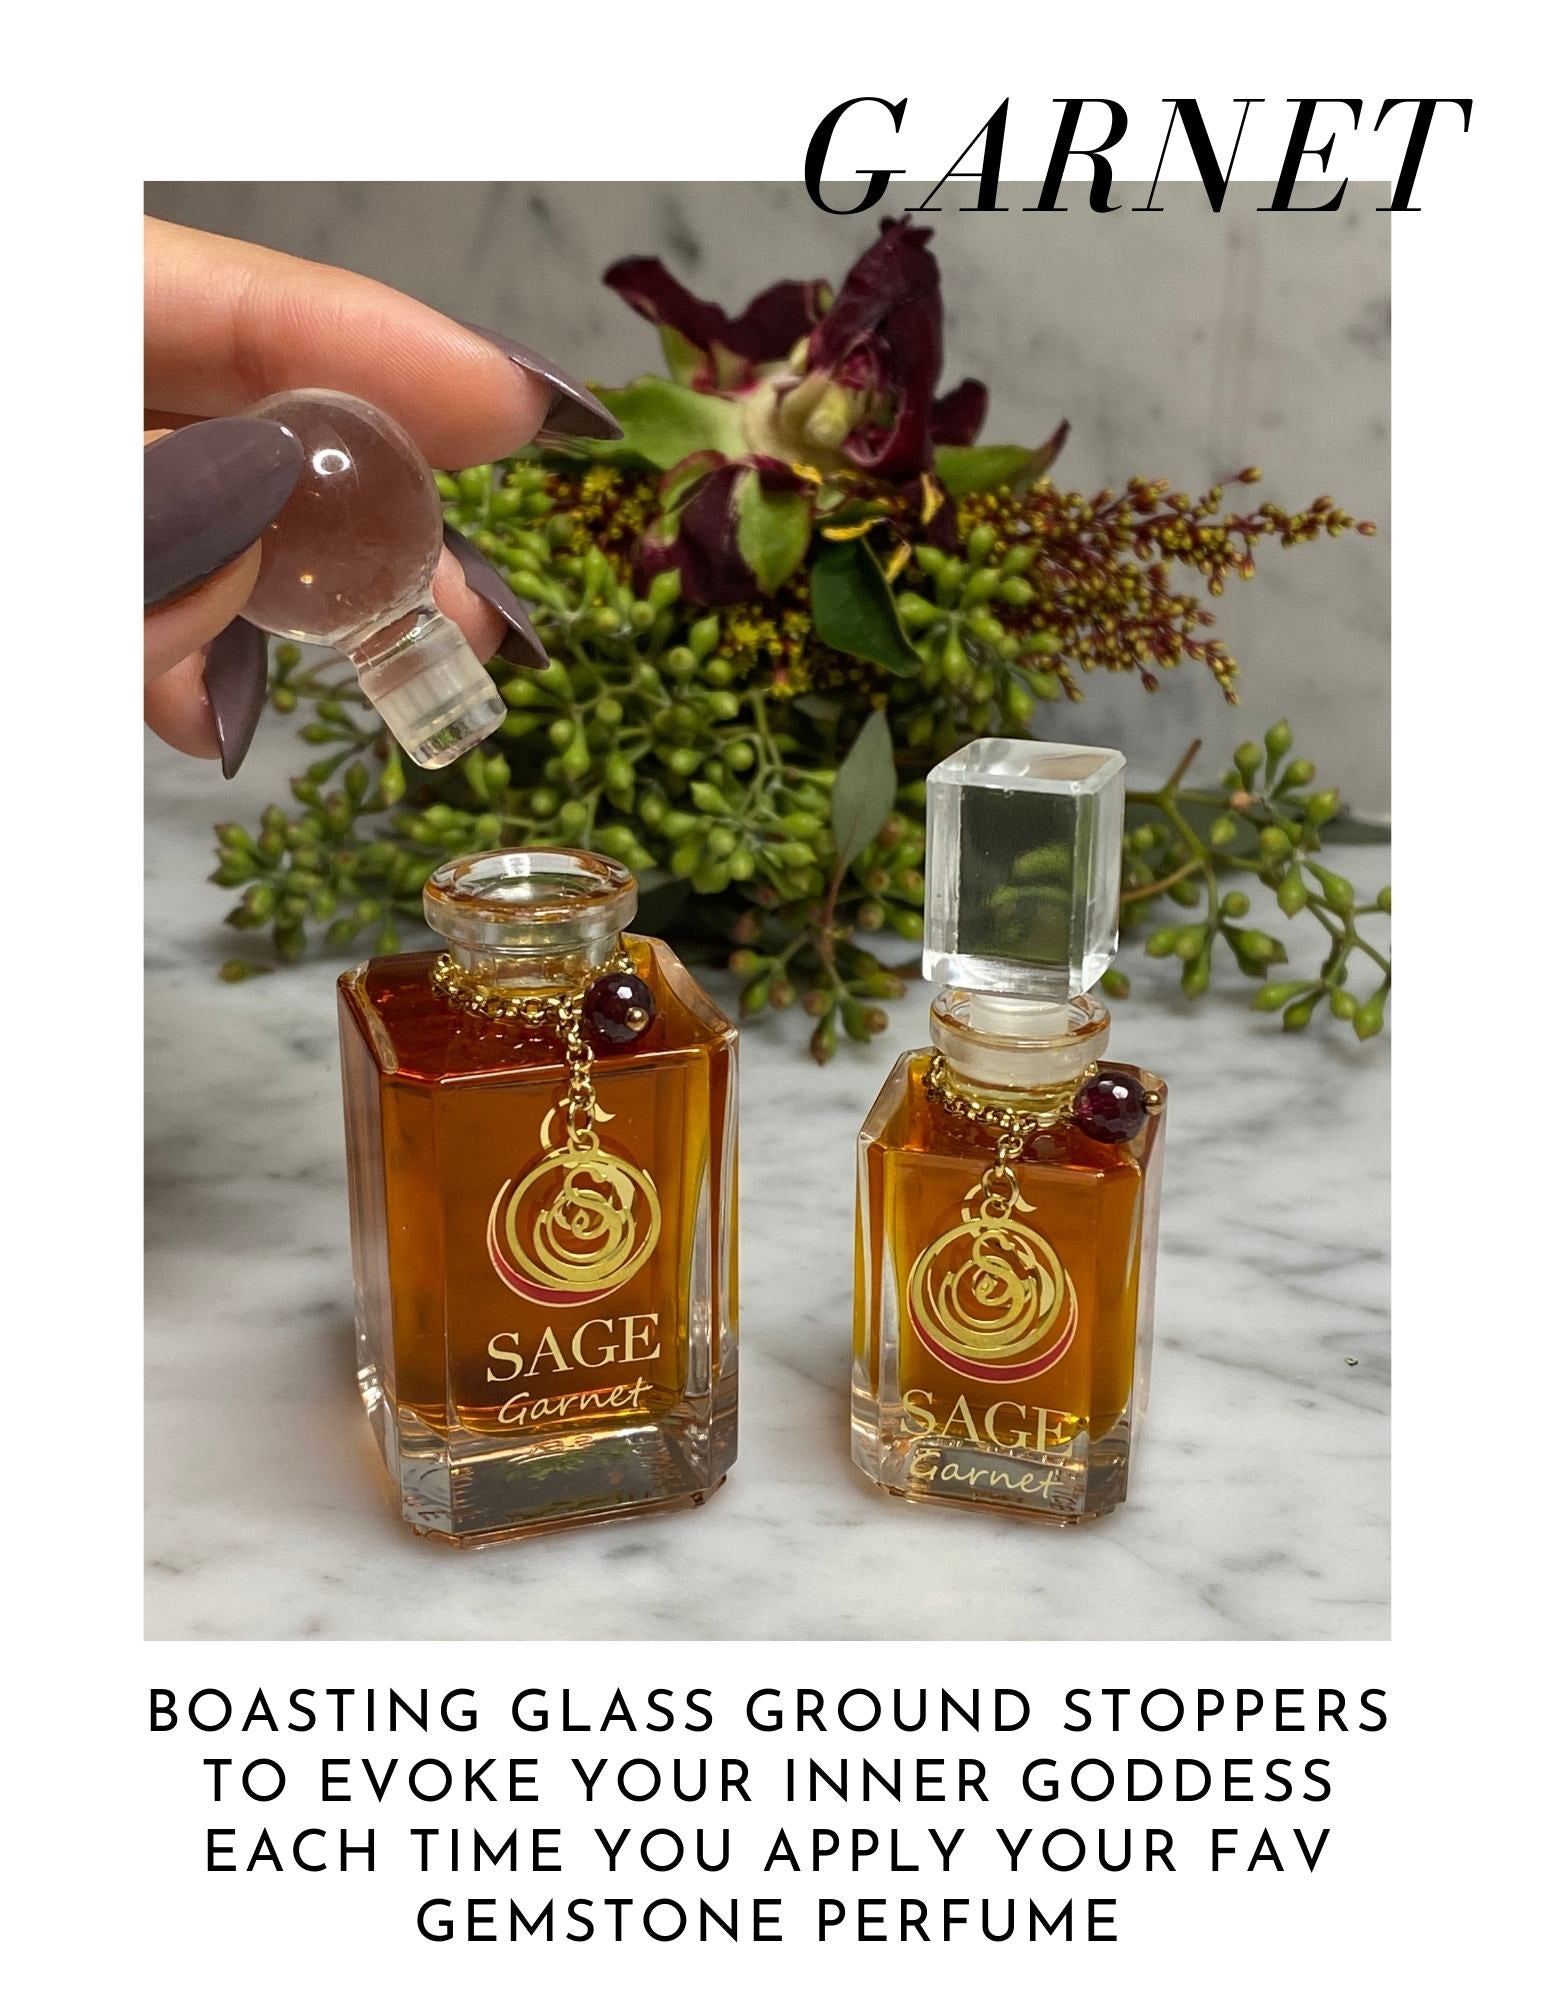 Garnet Gemstone Perfume Vanity Bottles by Sage Machado